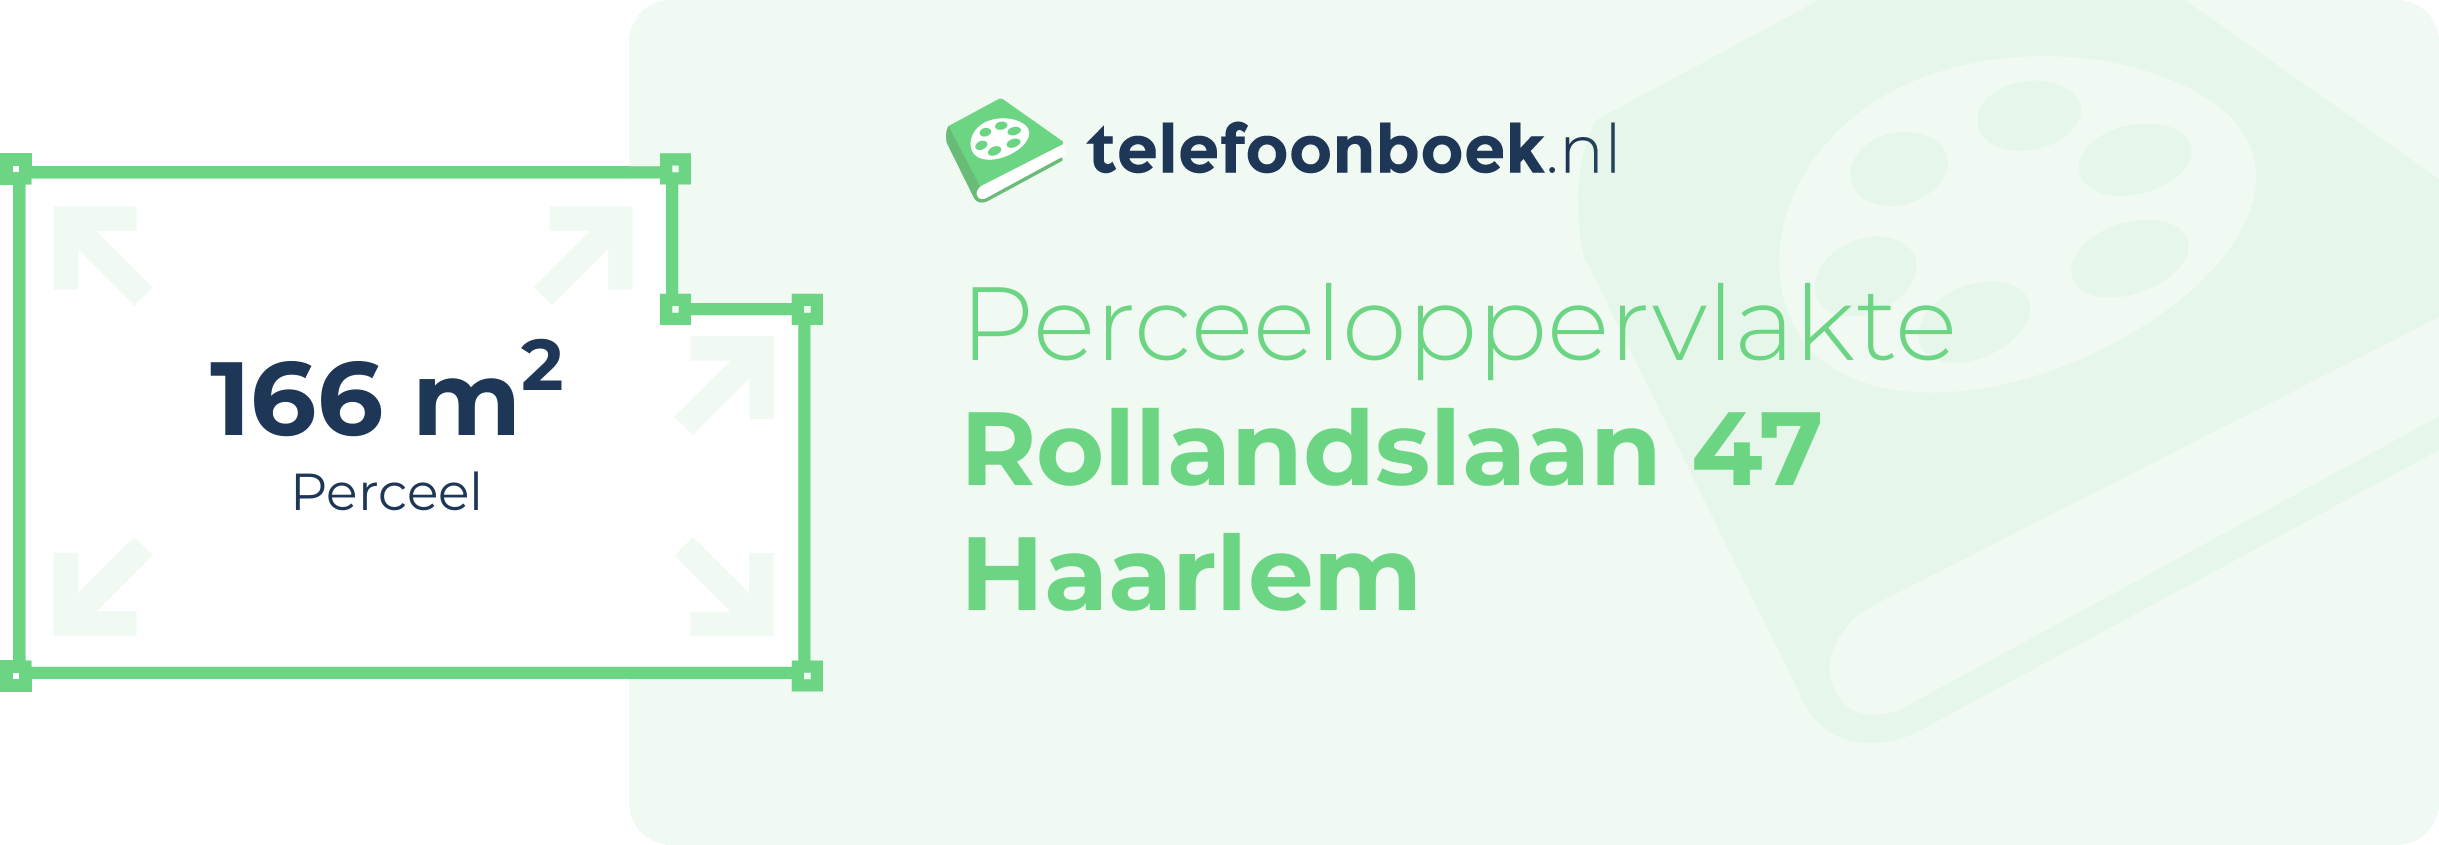 Perceeloppervlakte Rollandslaan 47 Haarlem